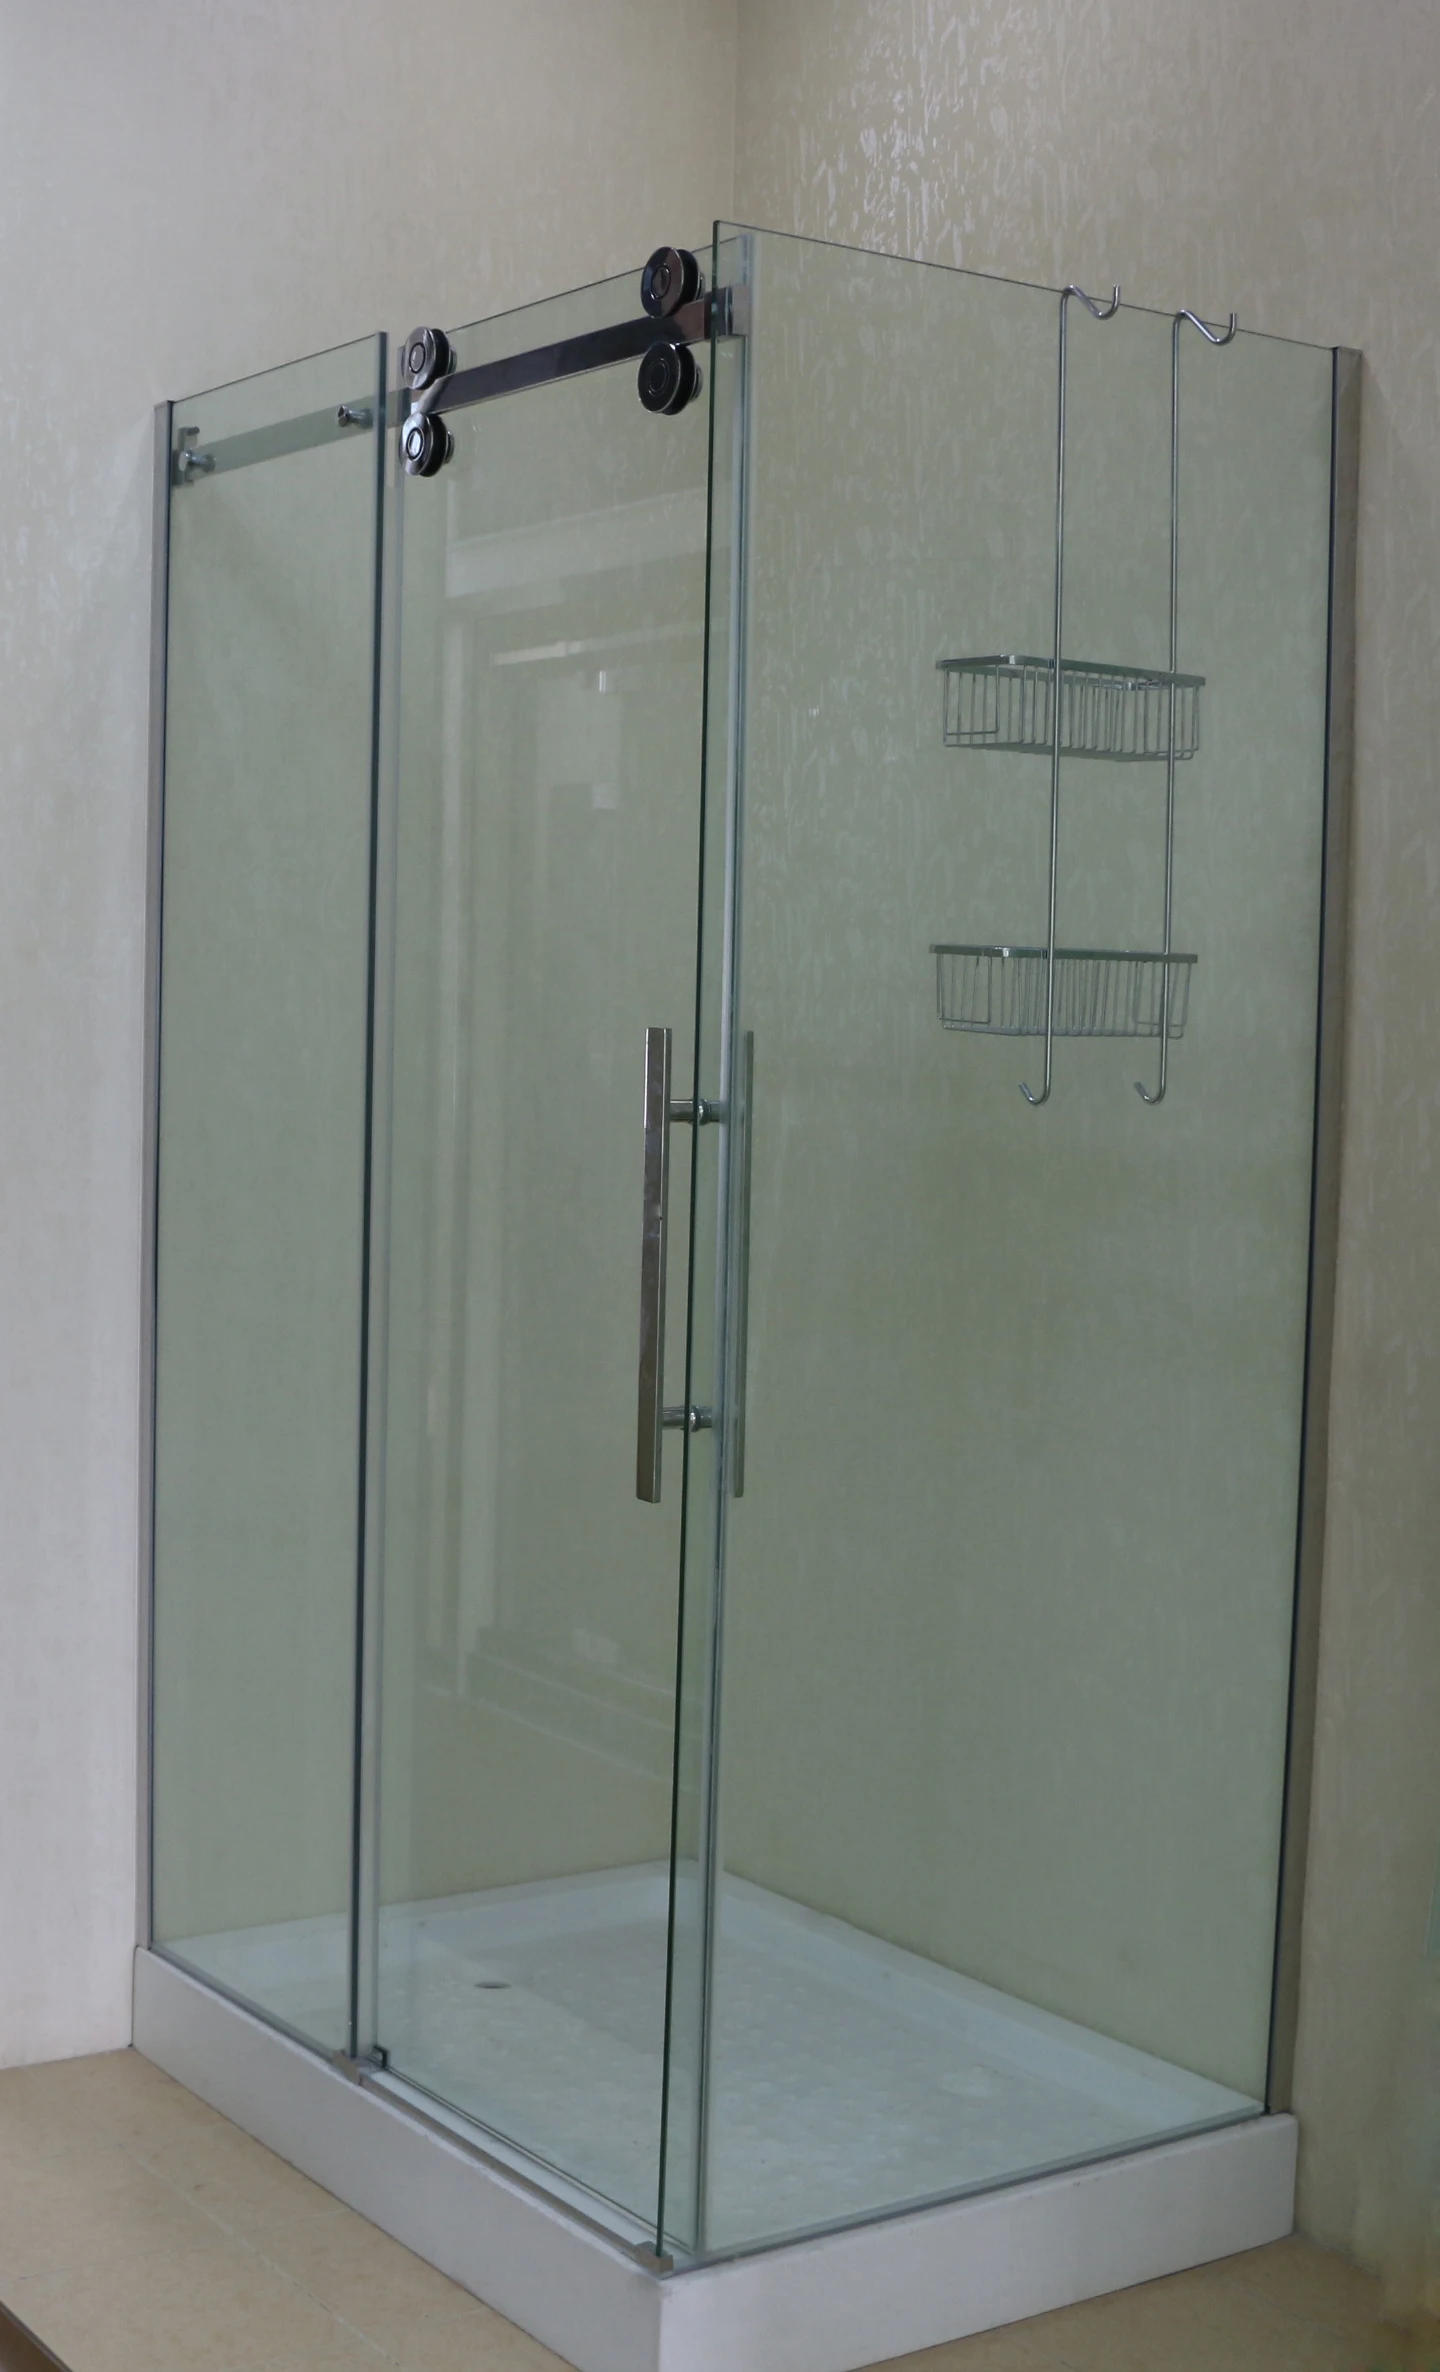 Professional Manufacturer Shower Room Glass Doors Brass Pull Door Handles